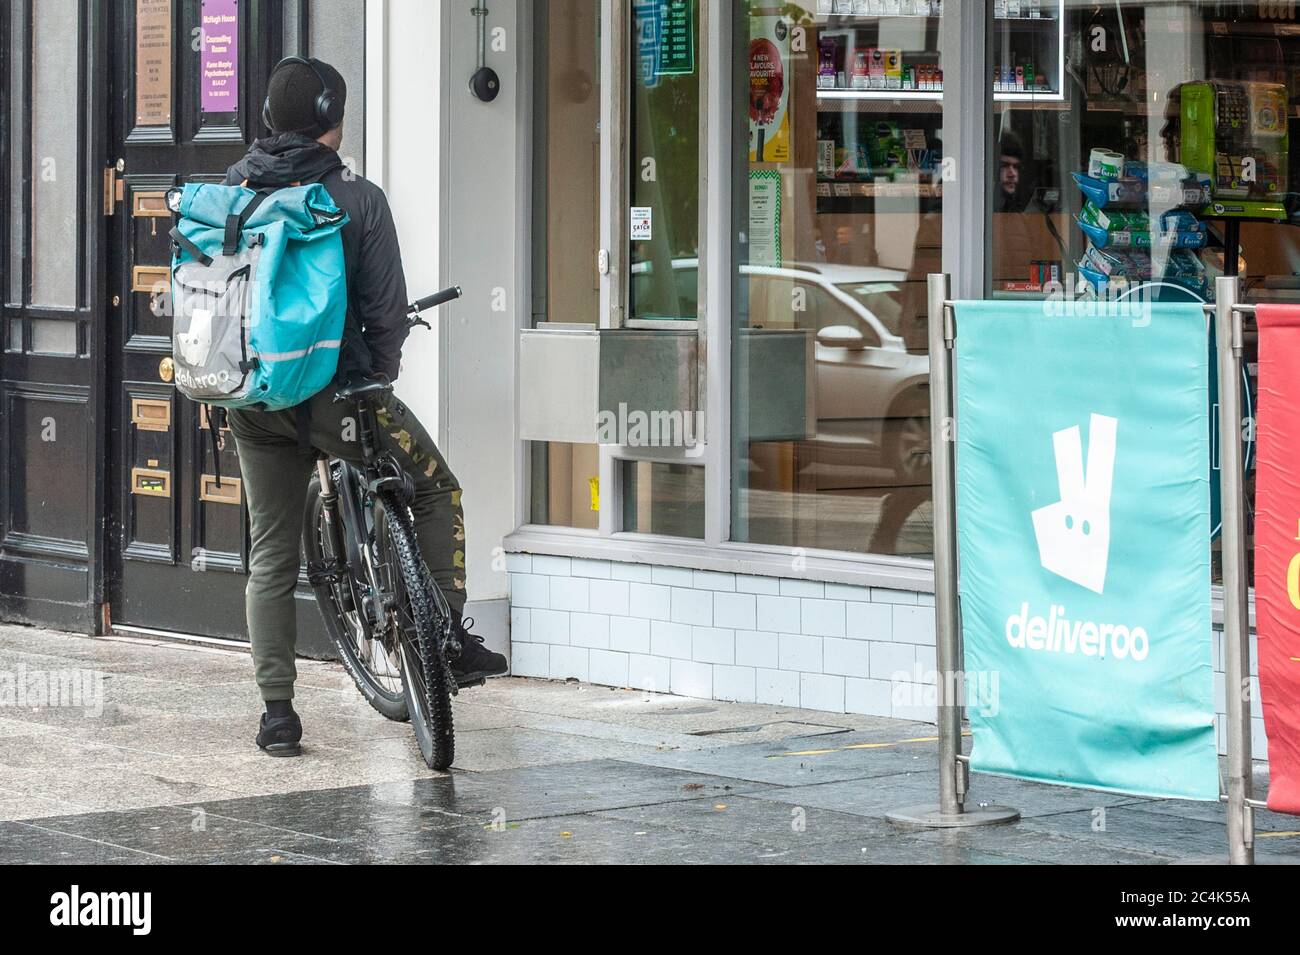 Deliveroo Food Delivery Rider wartet auf eine Bestellung neben einem Deliveroo Werbeschild in Cork City, Irland. Stockfoto